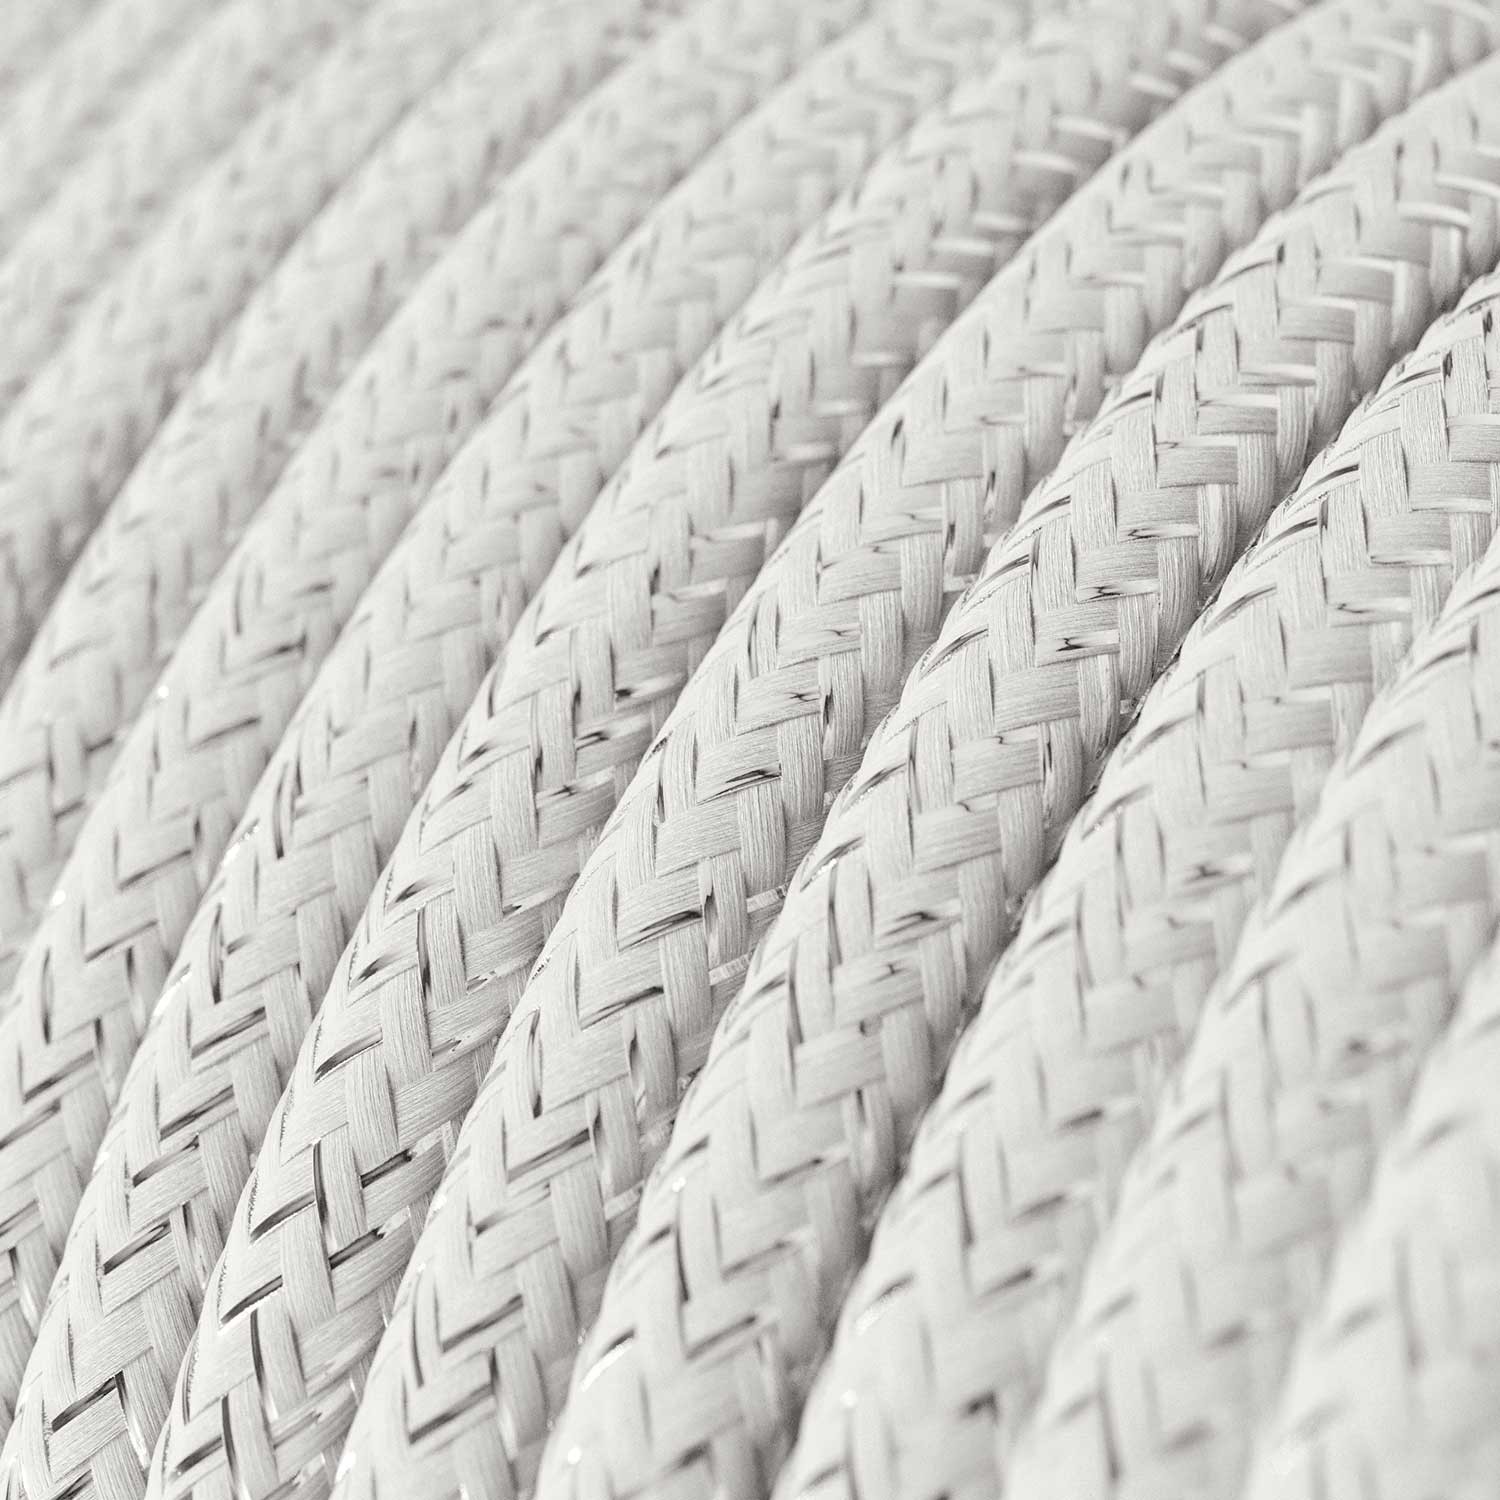 Okrugli blještavi tekstilni električni kabel RL01 - bijela